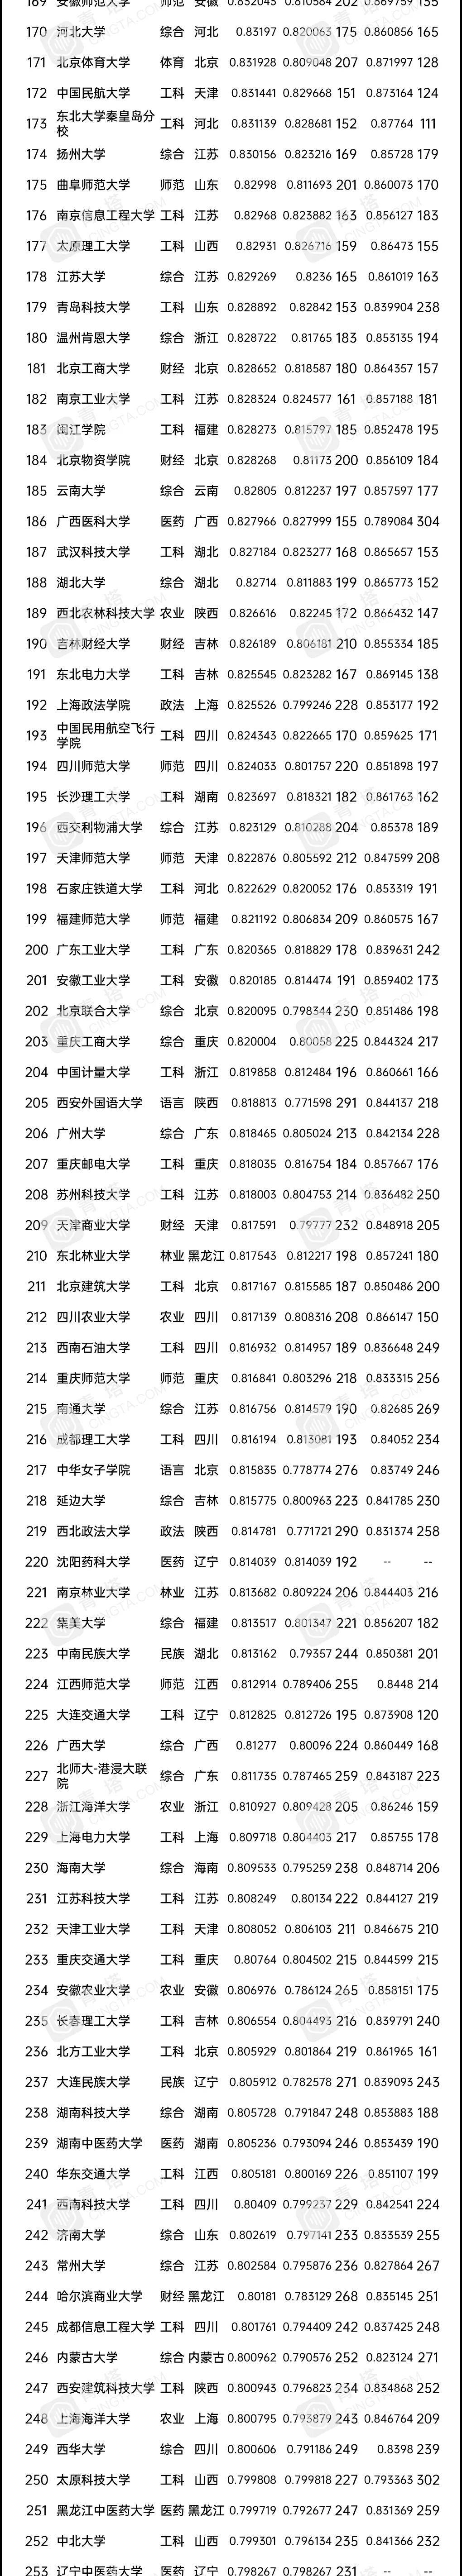 中国大学排名2019排行_2021最新中国大学排名:浙大第3,复旦第8,川大吉大爆冷进前10